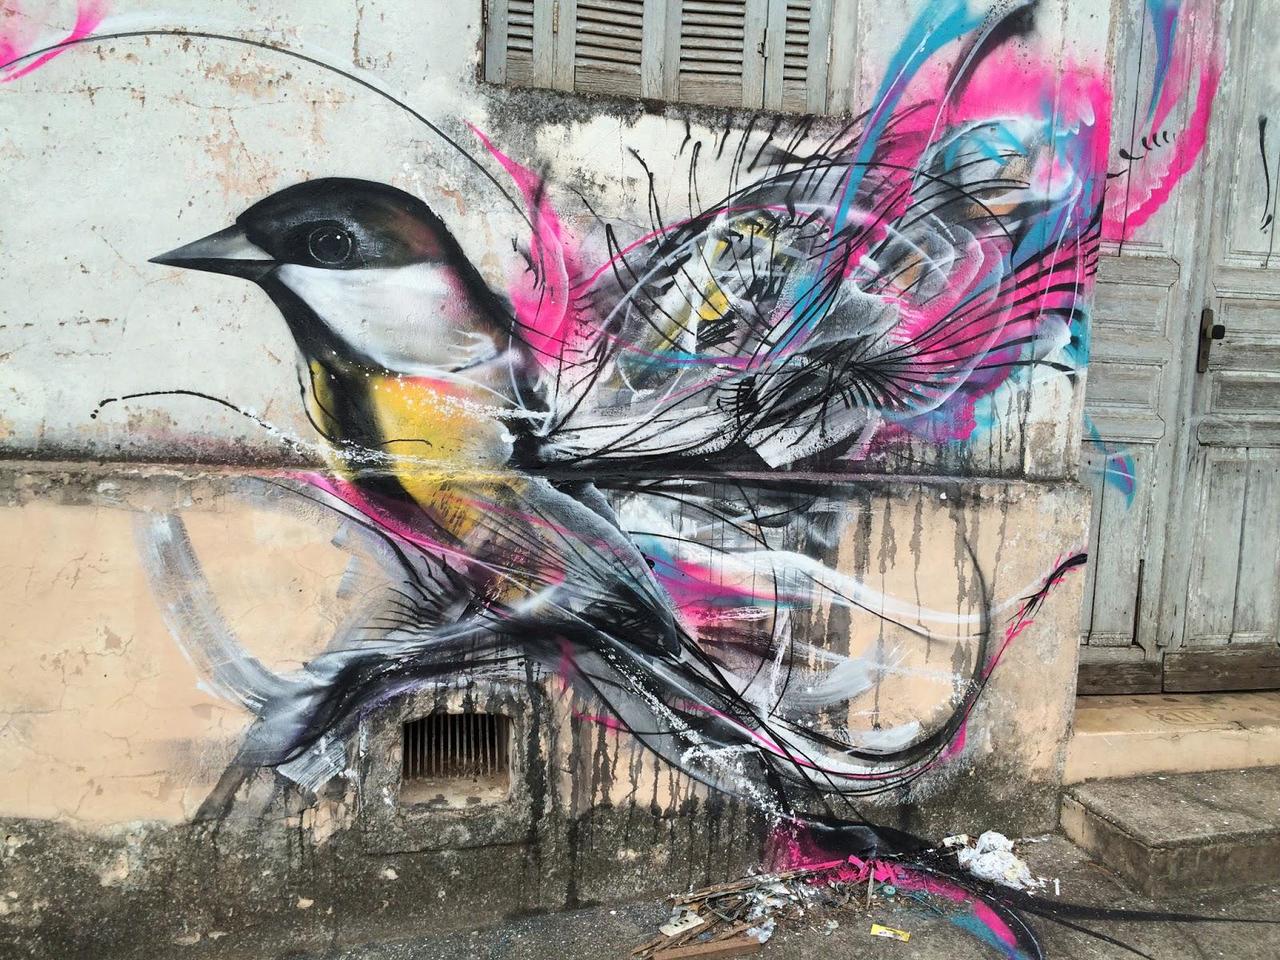 L7M creates a beautiful new painting in Sao Paulo, Brazil. #StreetArt #Graffiti #Mural http://t.co/kw6q2F83KK